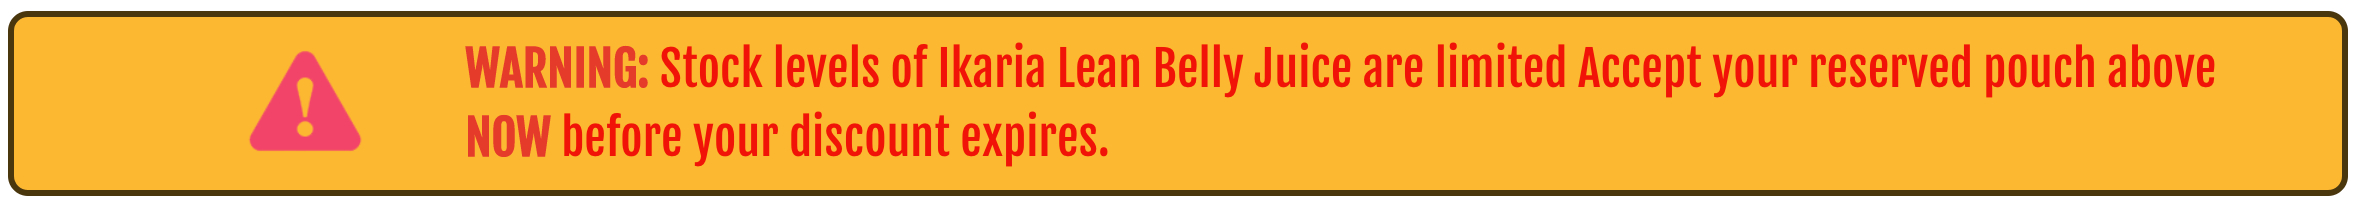 Ikaria Lean Belly Juice - WARNING